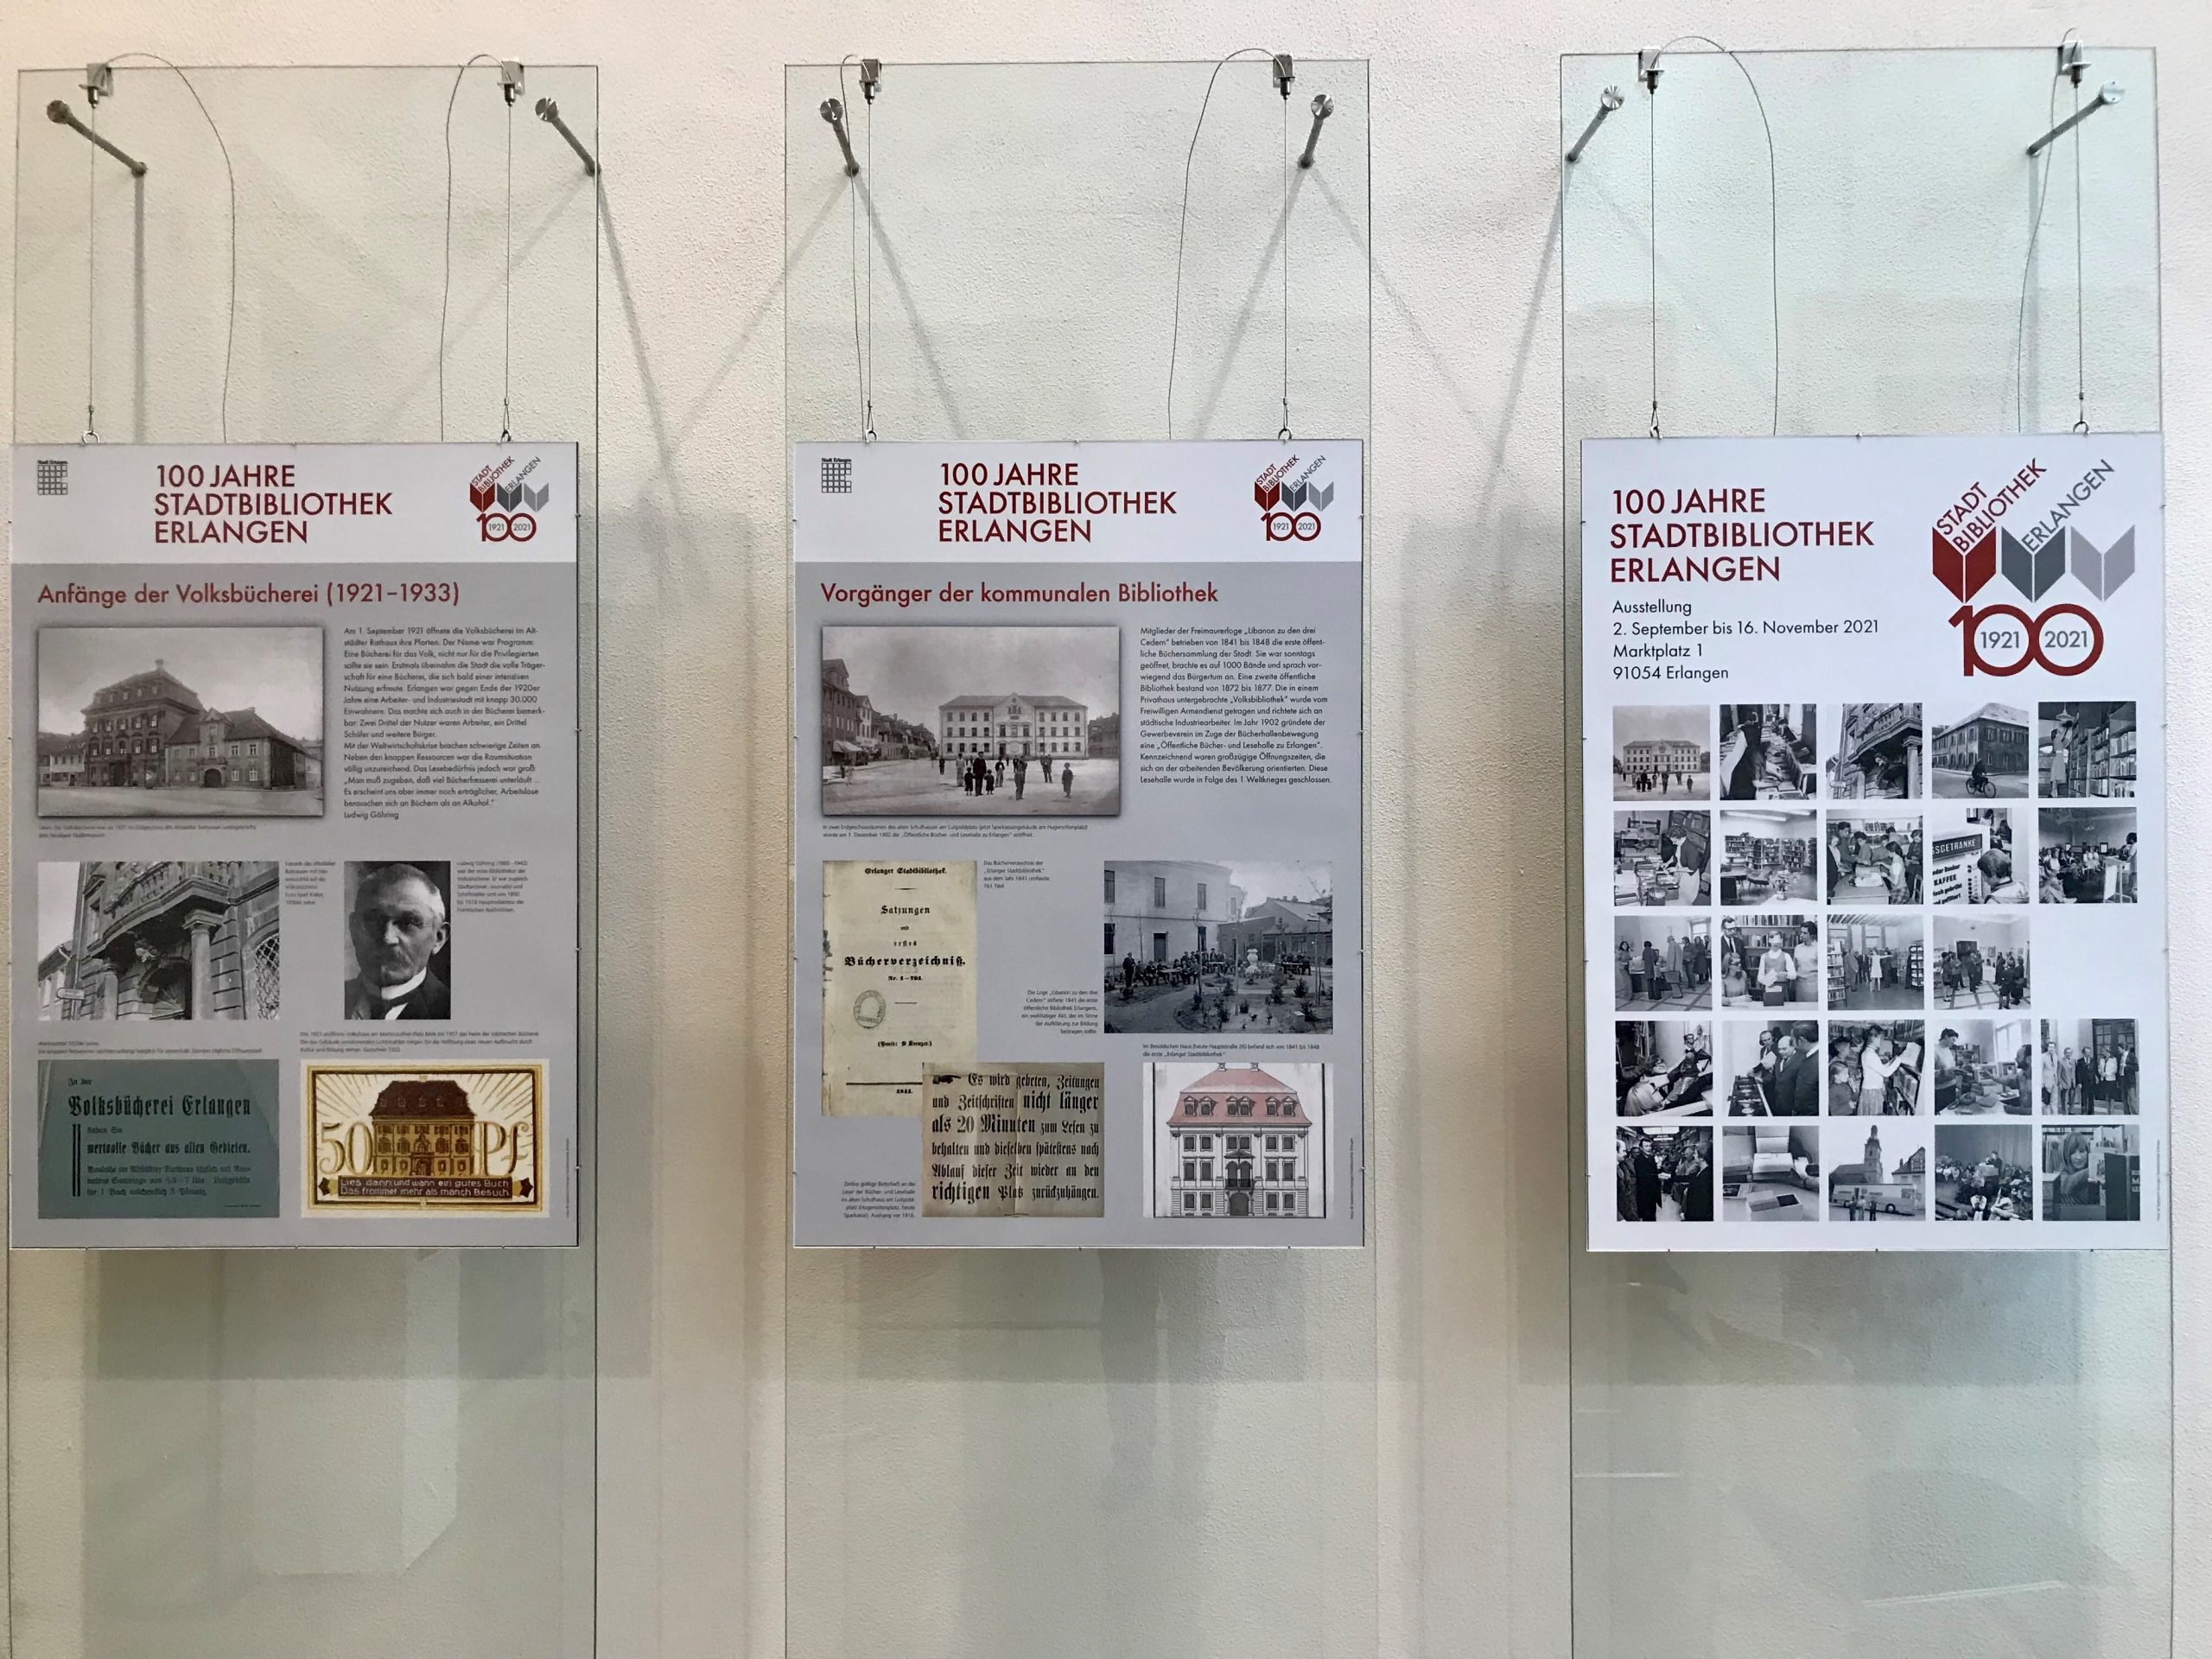 100 Jahre Stadtbibliothek: Ausstellungstafeln